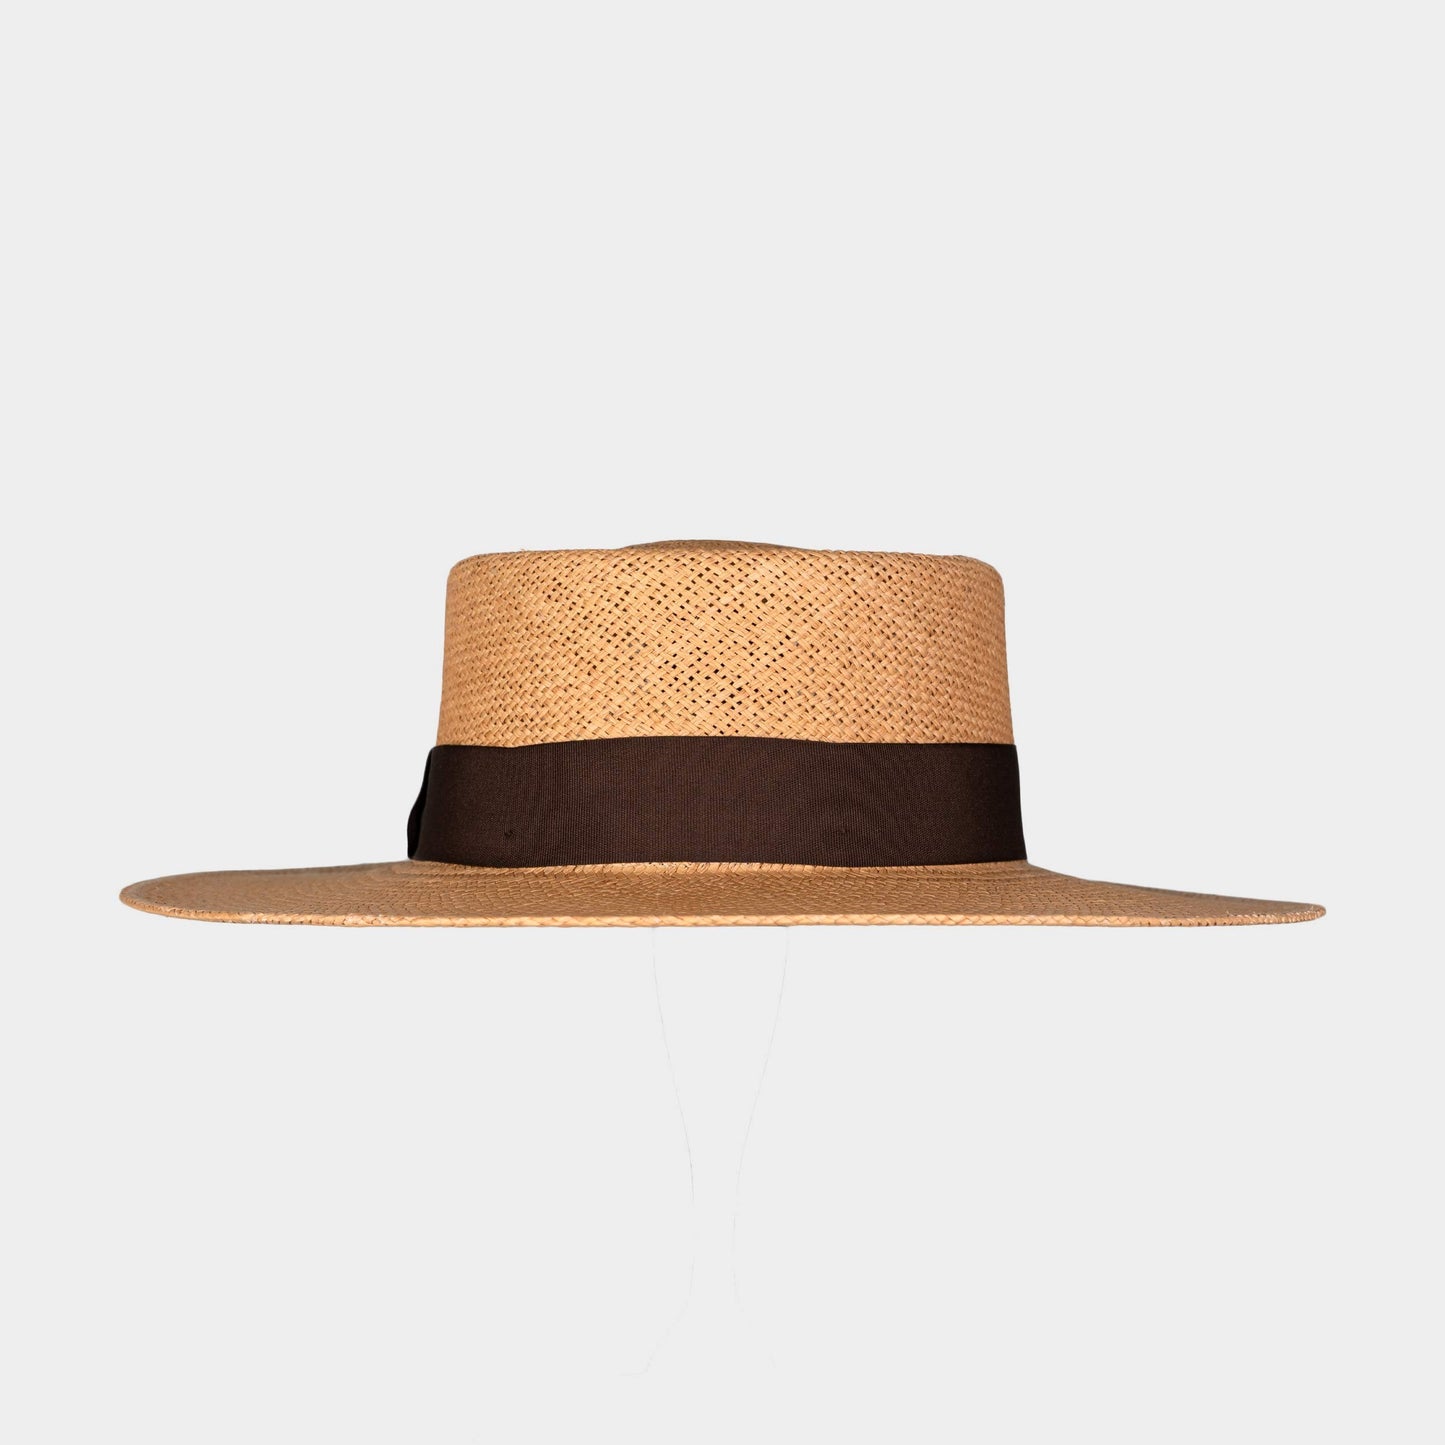 Handwoven Toquilla Straw hat in Wheat/ Walnut